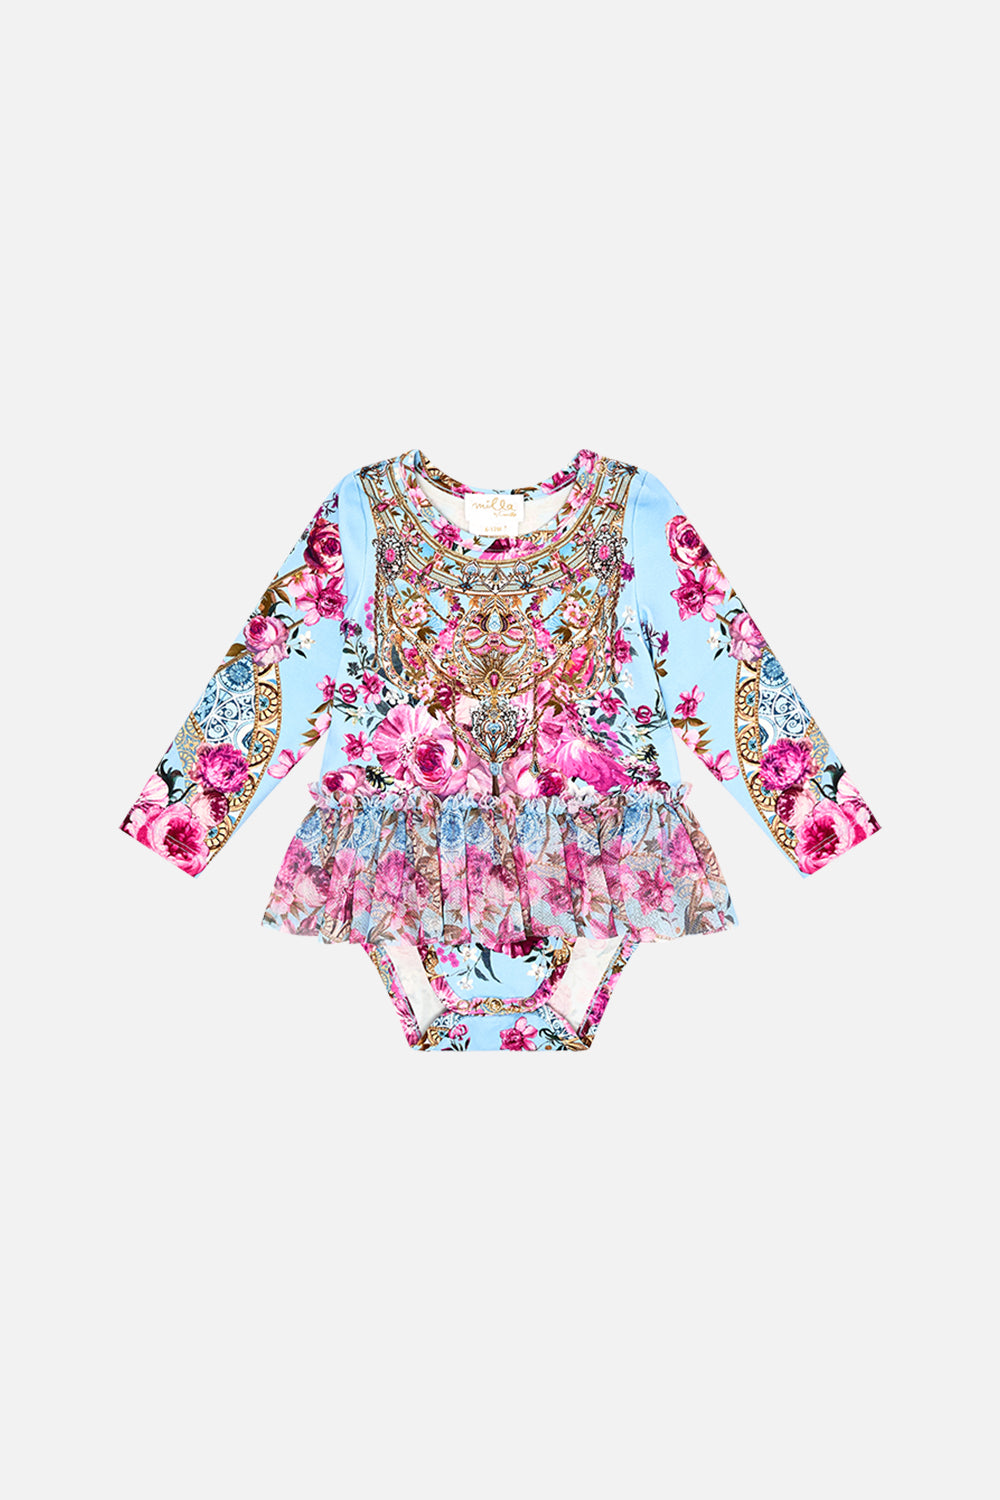 Milla by CAMILLA baby tutu bodysuit in Down The Garden Path print